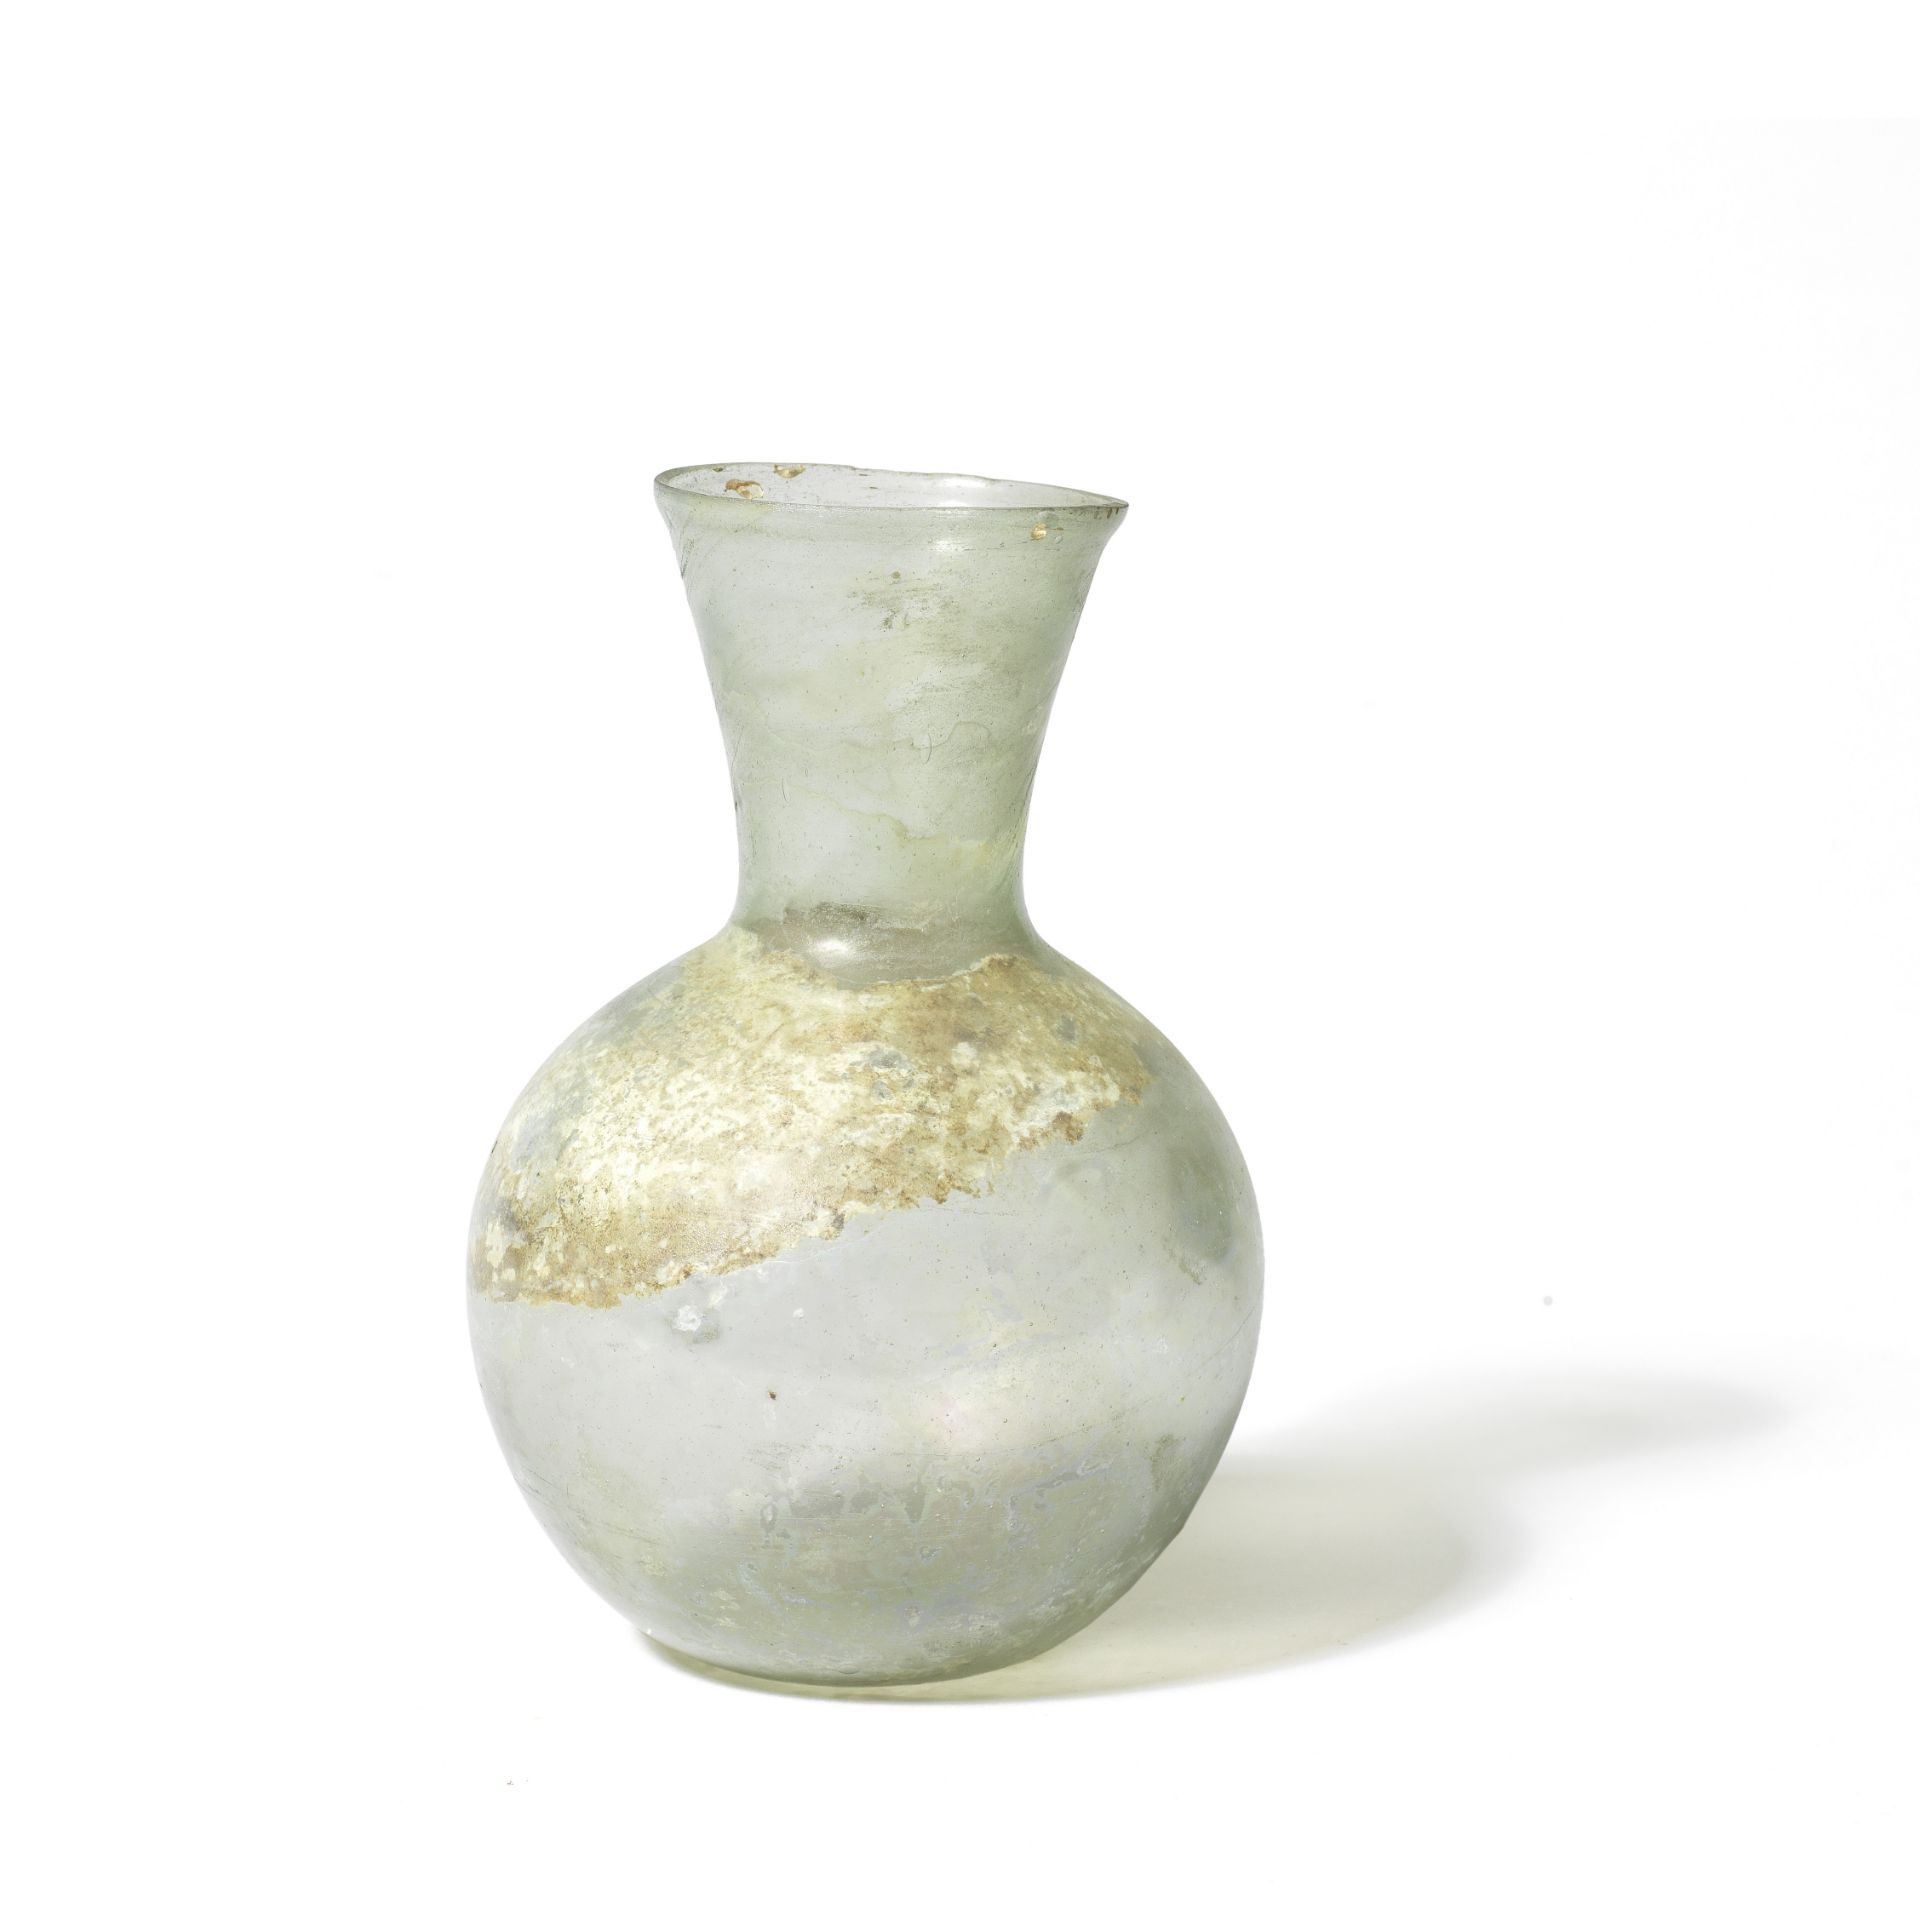 A Roman pale green glass flask